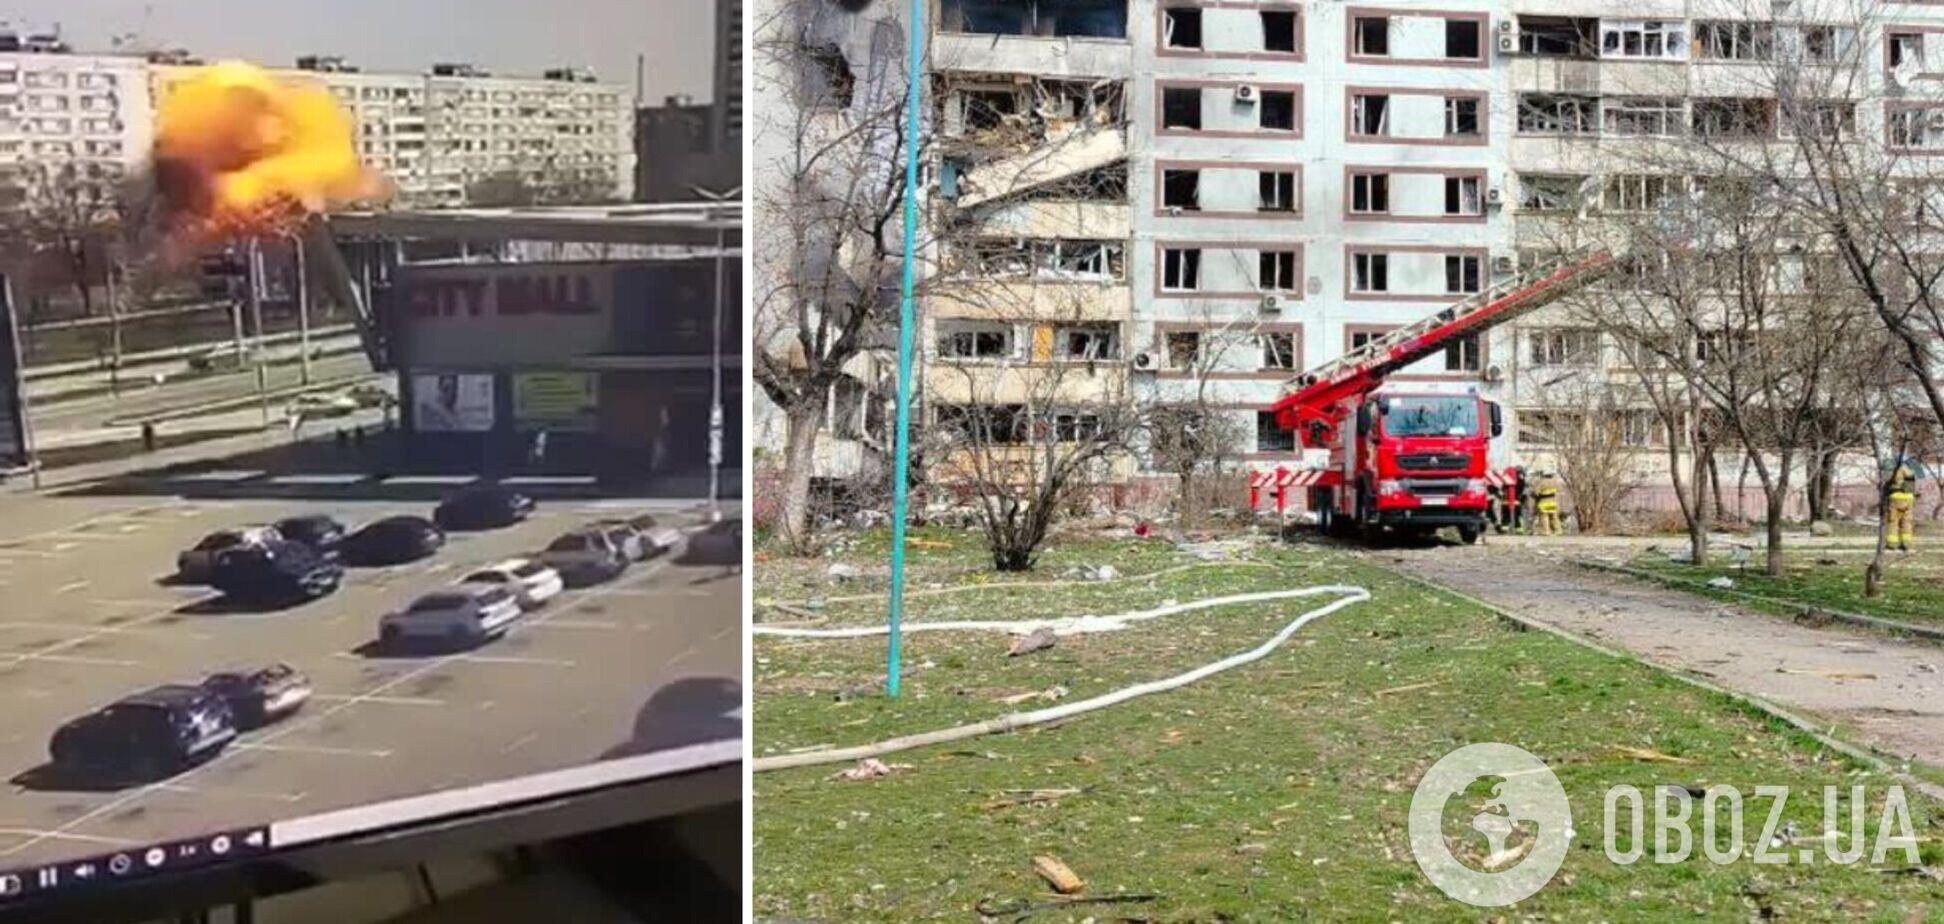 Оккупанты ударили по многоэтажкам в Запорожье, есть разрушения: пострадали 25 человек, среди них дети. Фото и видео